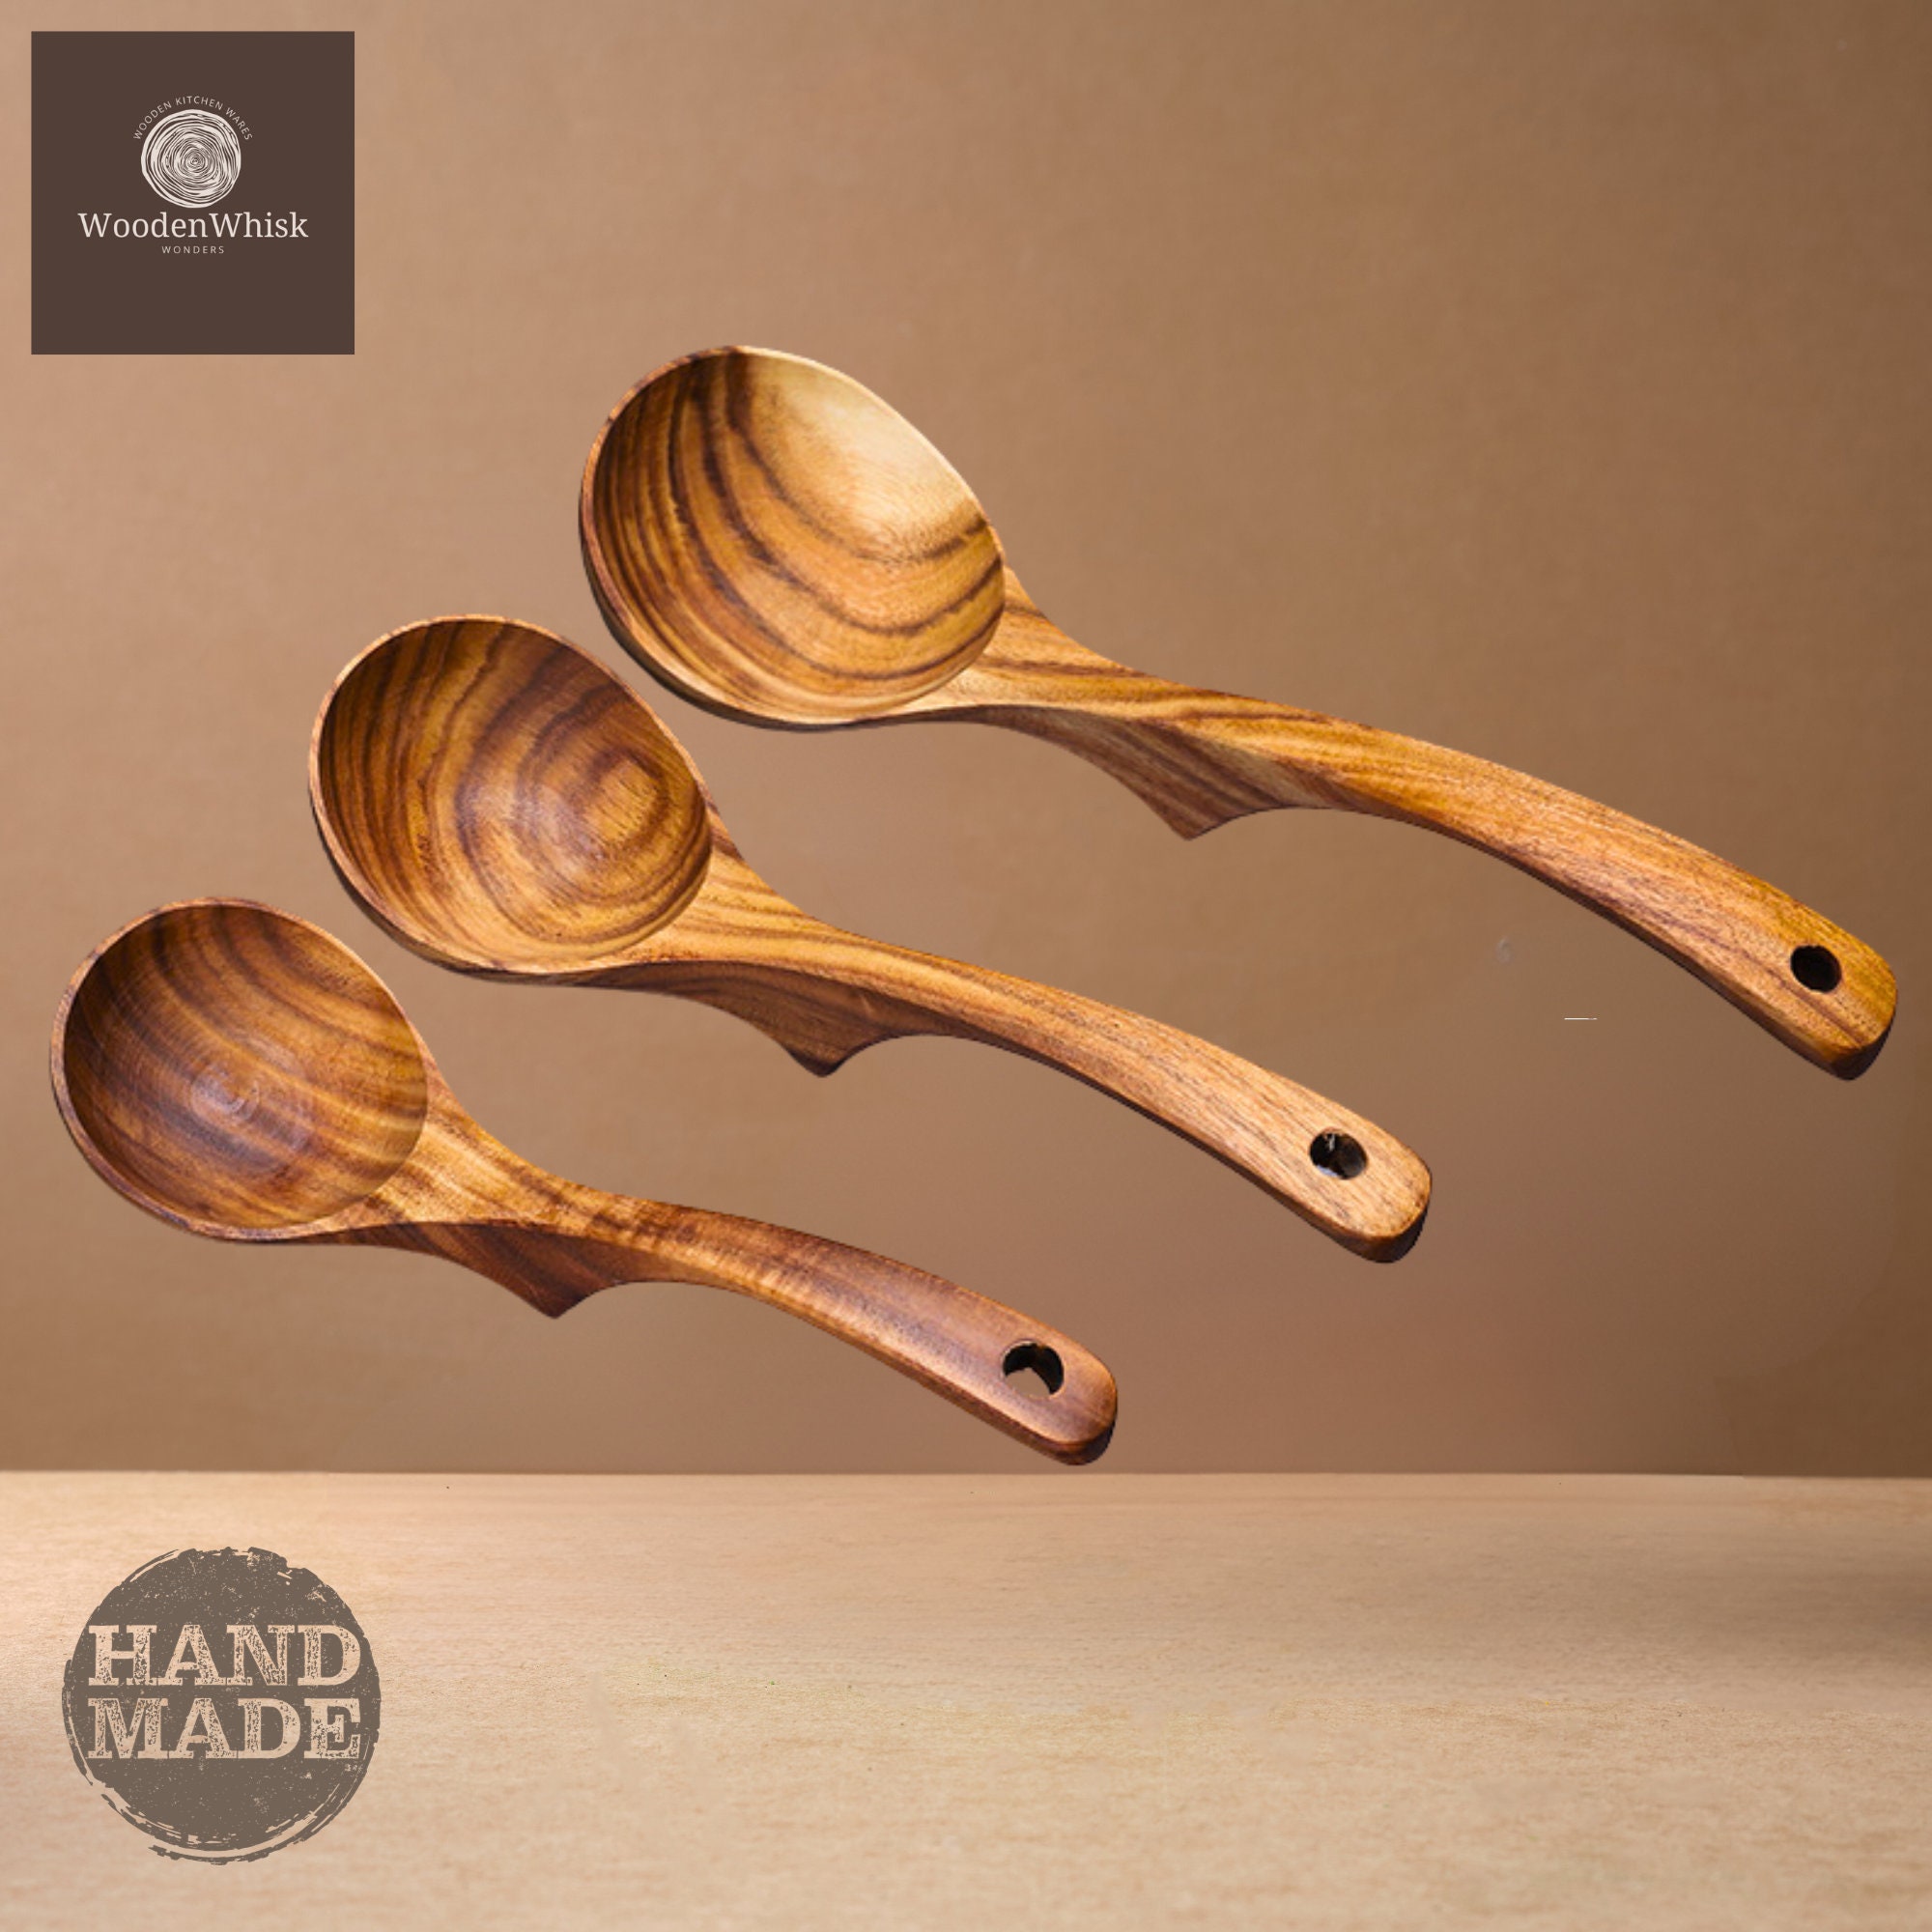 Cucharas de madera para cocinar, juego de utensilios de cocina de madera de  madera maciza natural, incluye cucharas, espátulas, cucharones, cuchara